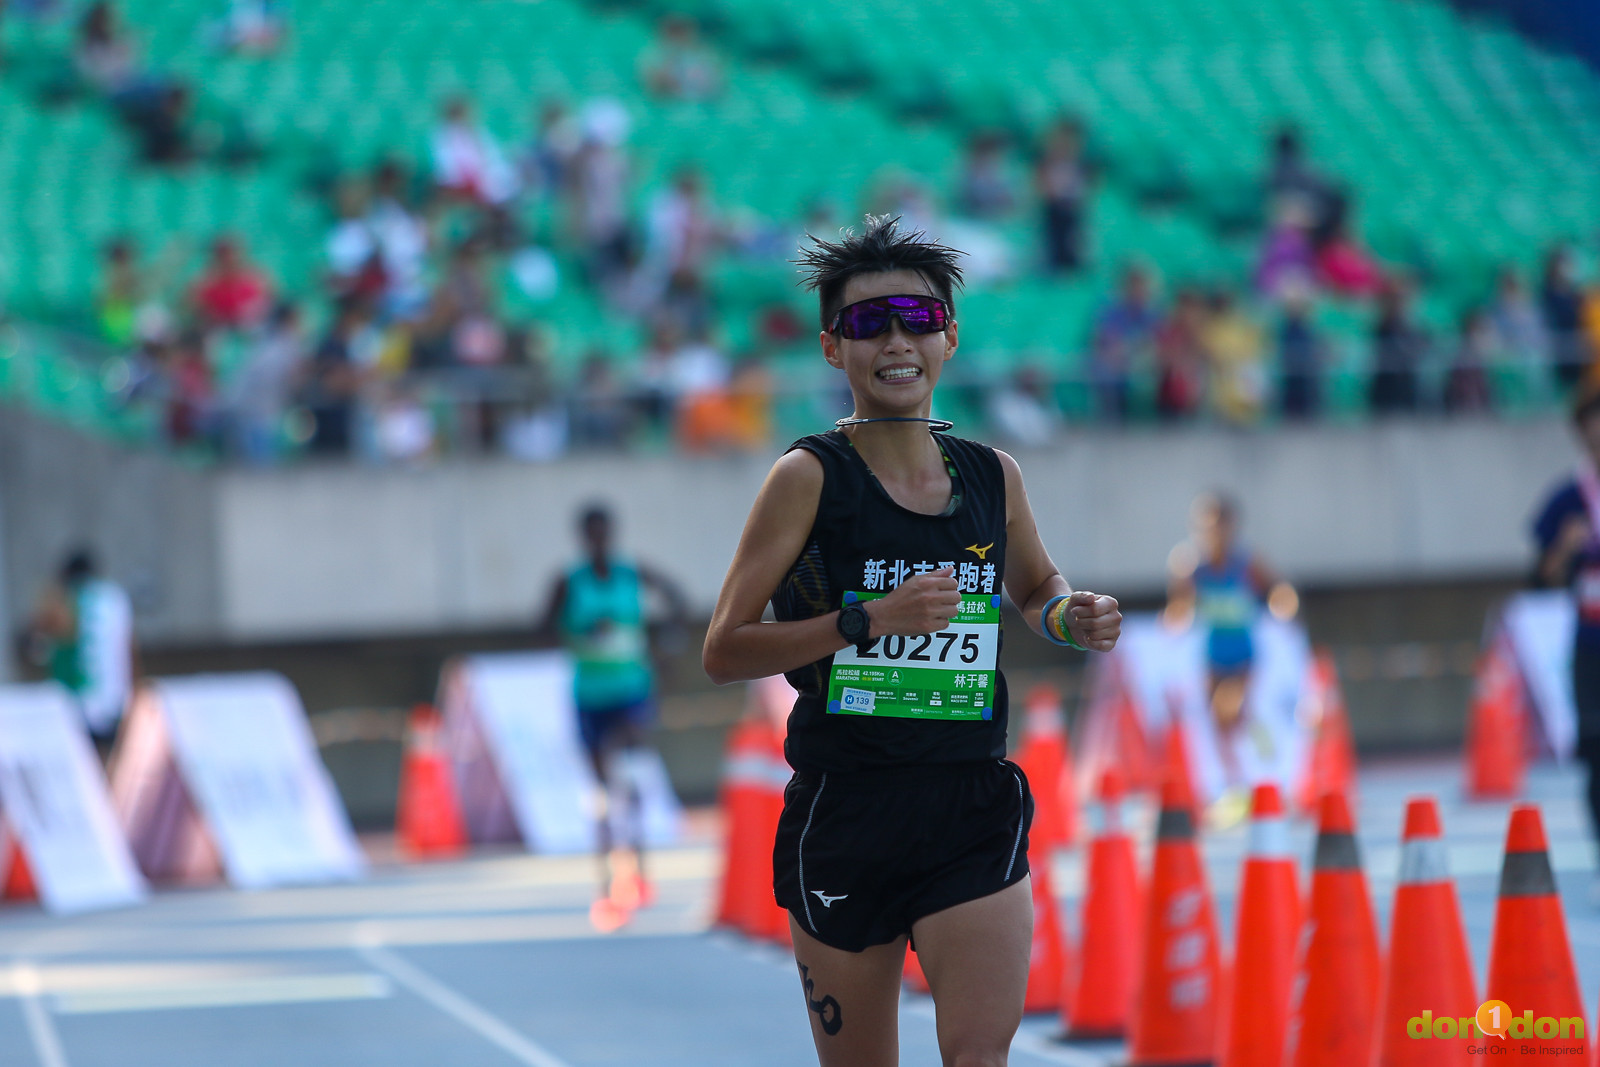 國內女子組冠軍由林于馨（020275），以成績 3 小時 07 分 34 秒拿下